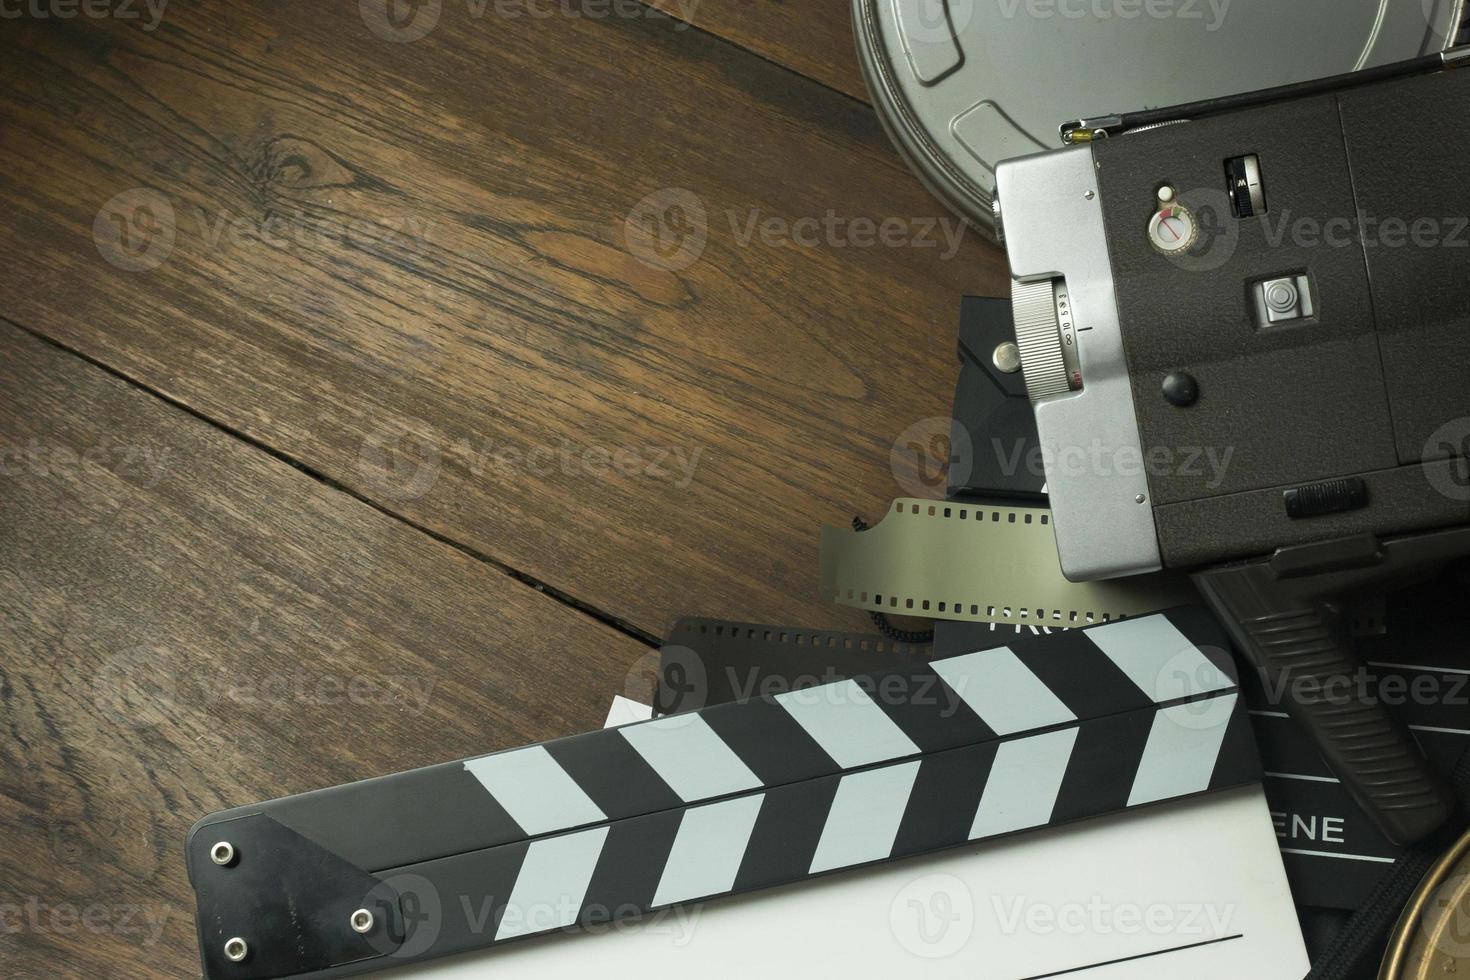 produção de filmes nos bastidores imagem plana leiga para segundo plano. foto